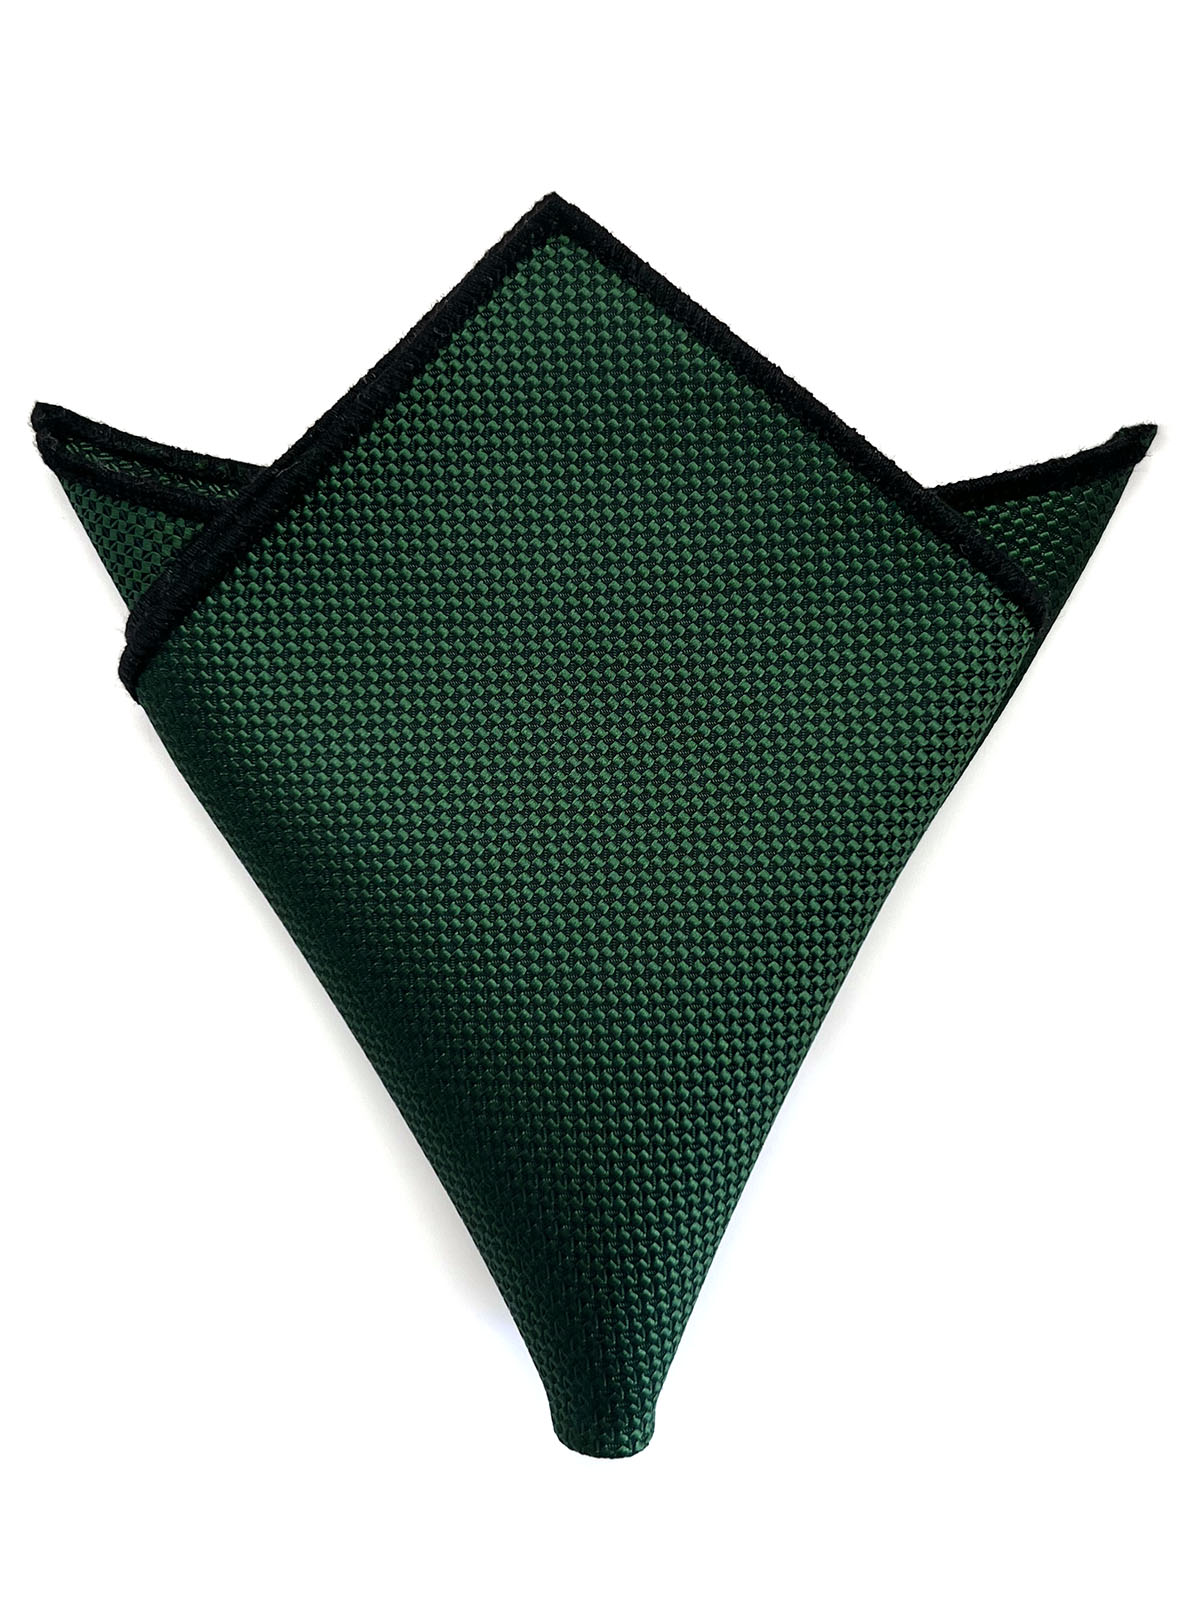 Платок нагрудный жаккардовый зеленый описание: Материал - Жаккард, Размеры - 24 см Х 24 см, Страна производства - Турция;